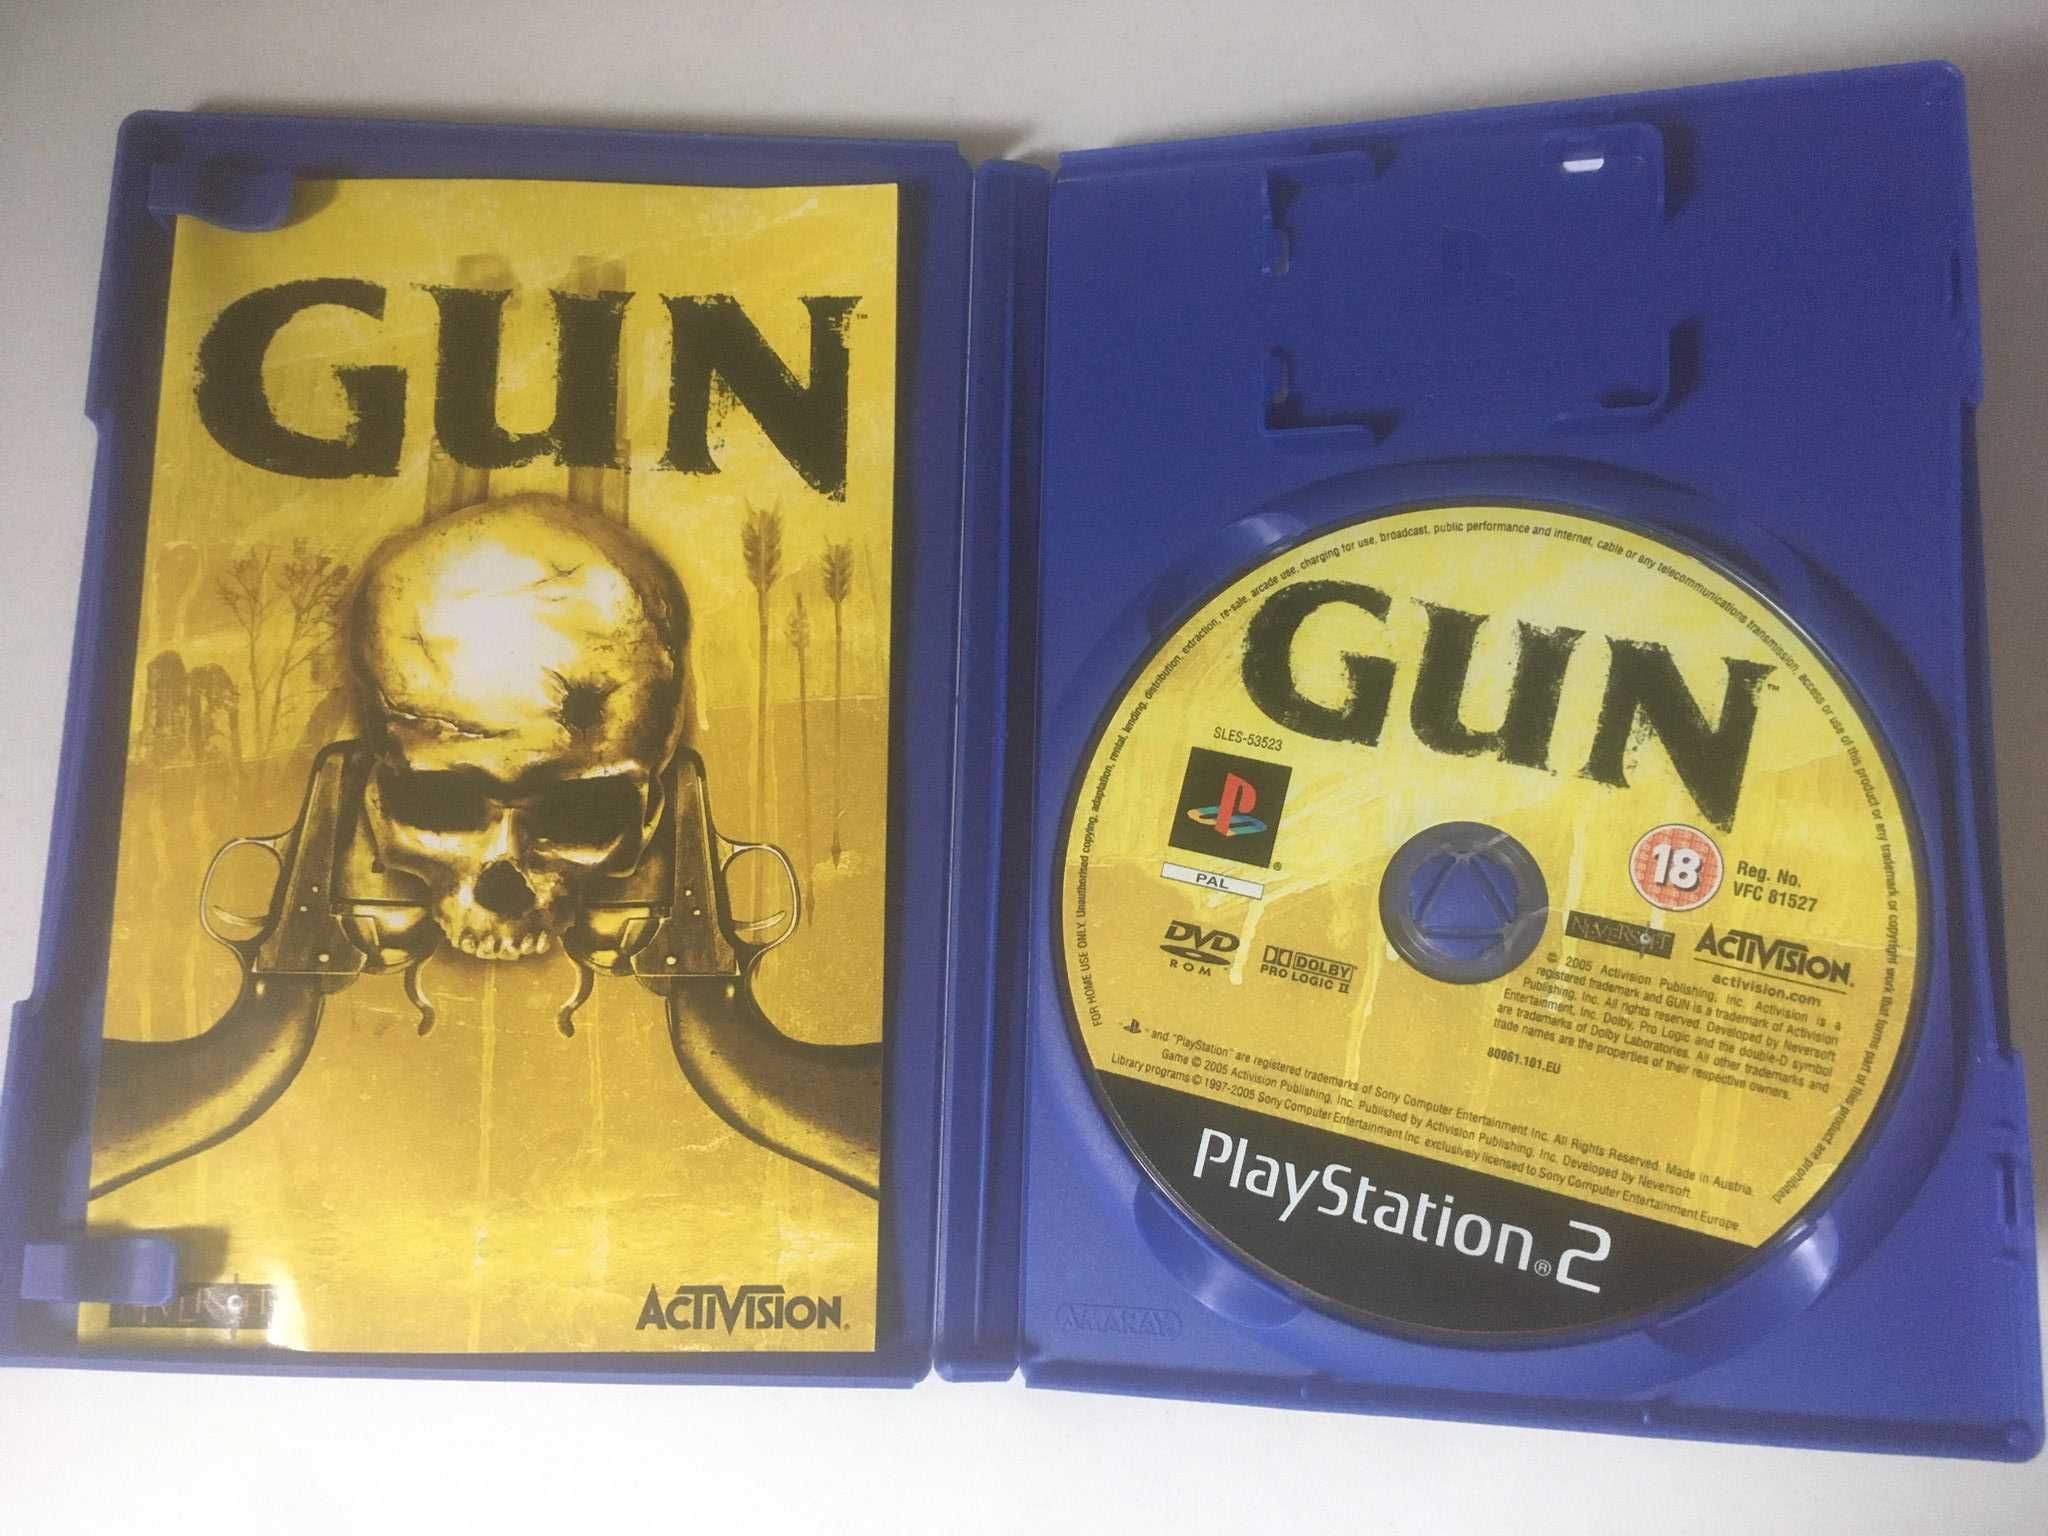 PS2 - Gun (Como Novo)